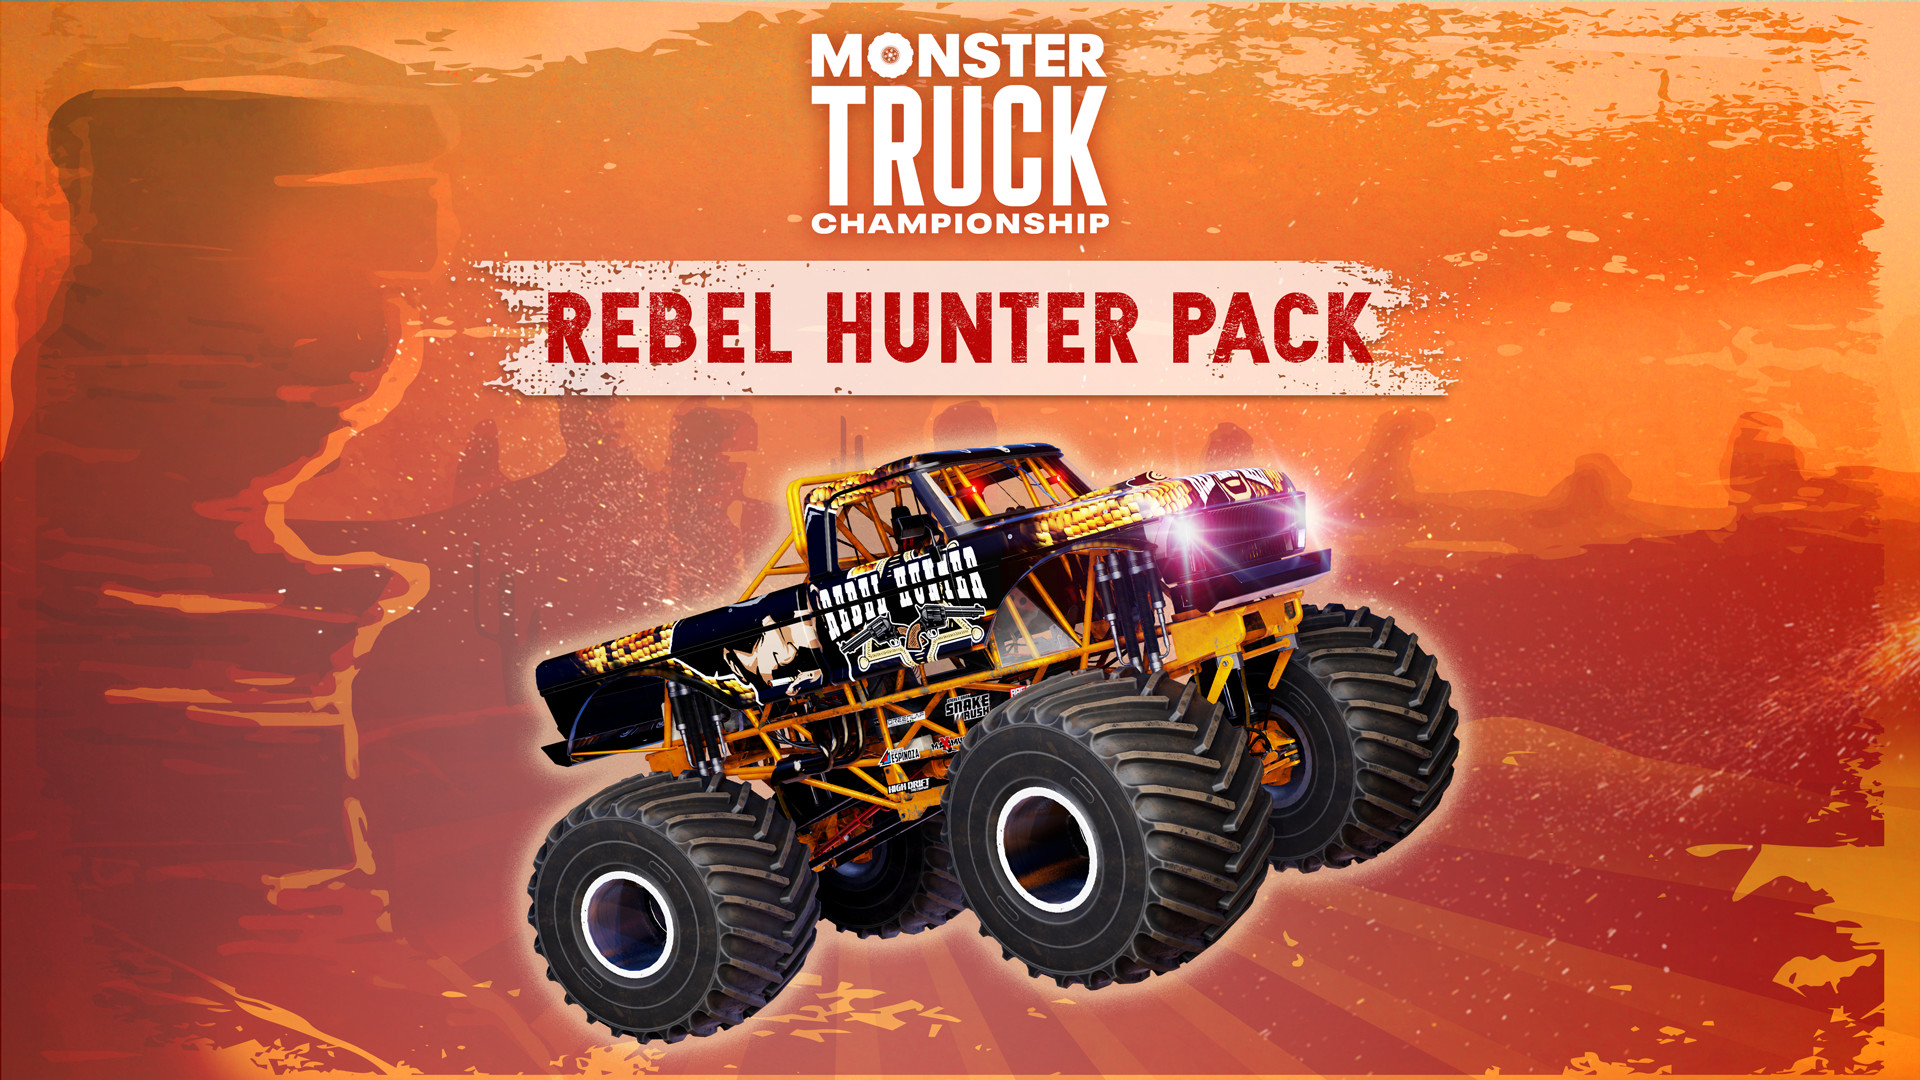 Monster Truck Championship - Rebel Hunter Pack DLC Steam CD Key, $10.16